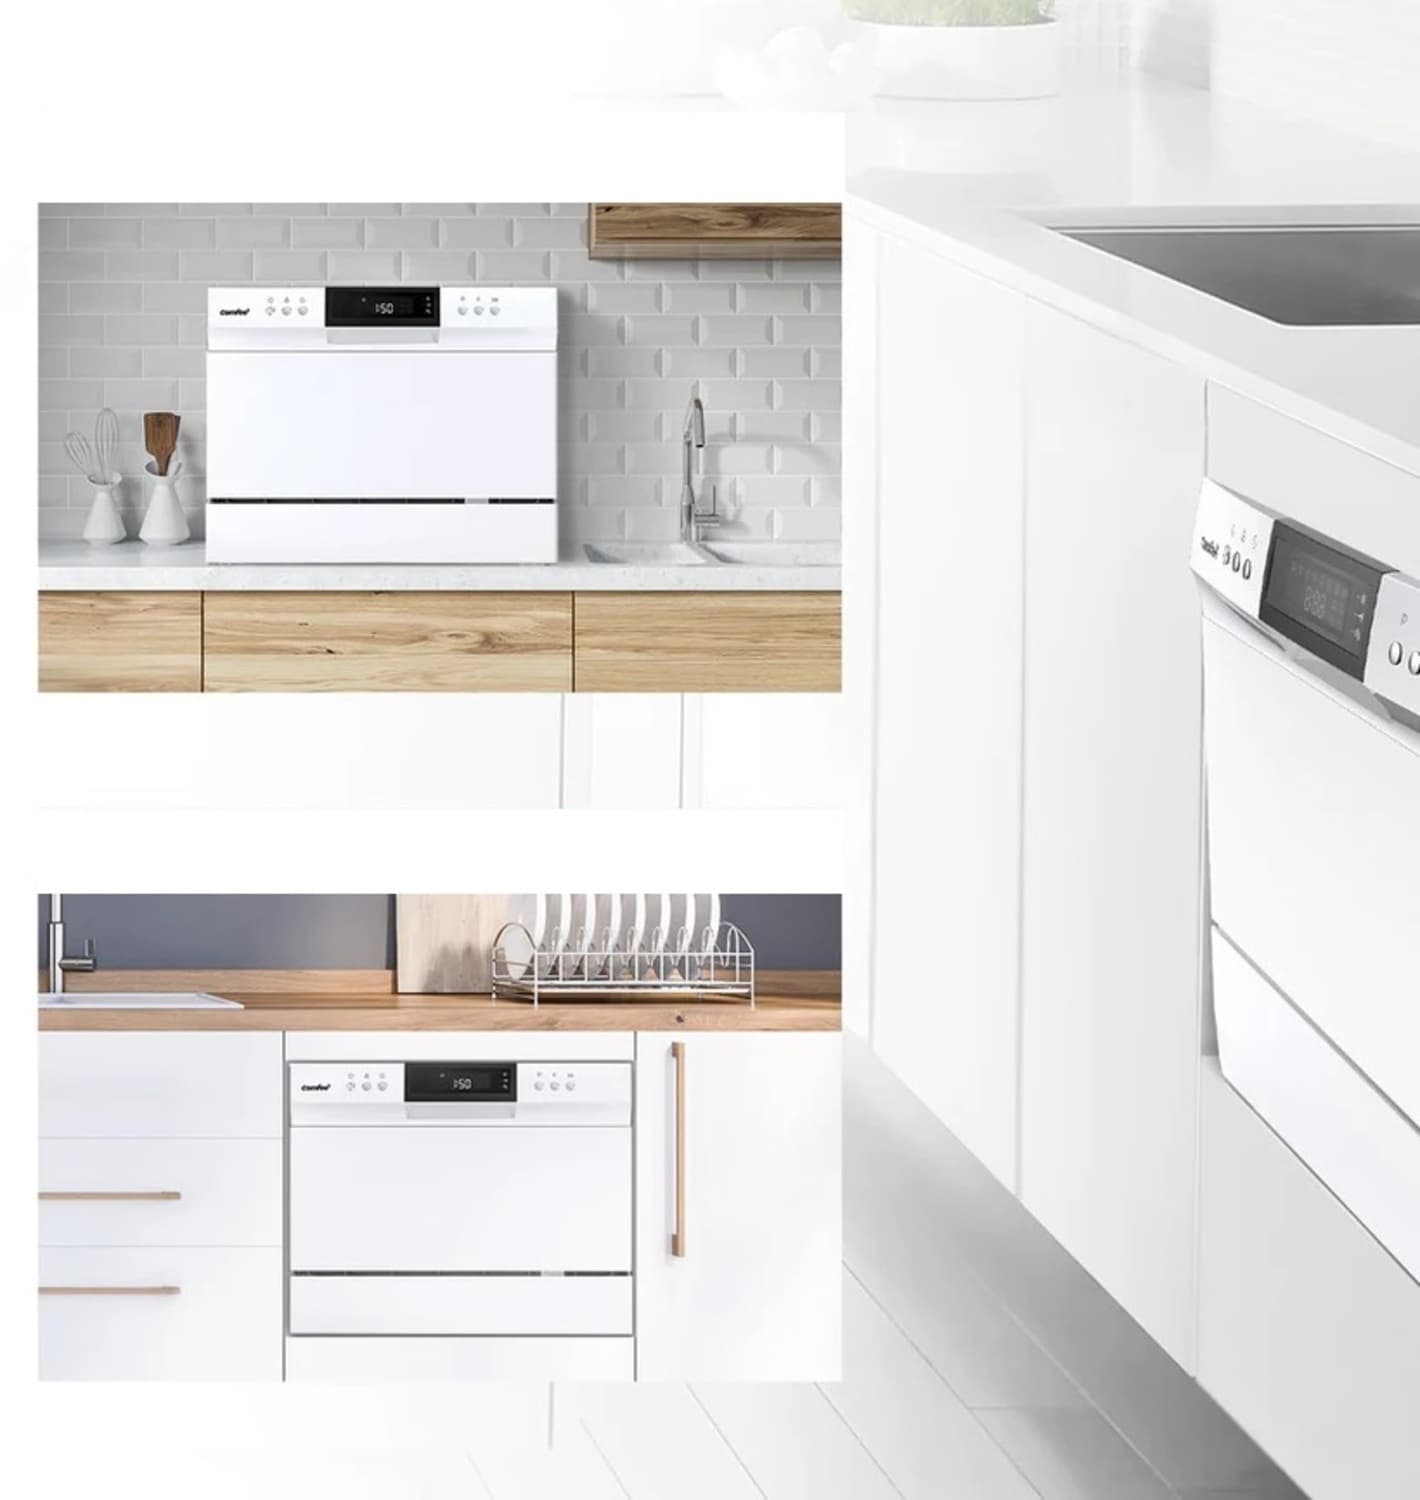 COMFEE Countertop Dishwasher, Energy Star Portable Dishwasher, 6 Place -  Amazing Bargains USA - Buffalo, NY